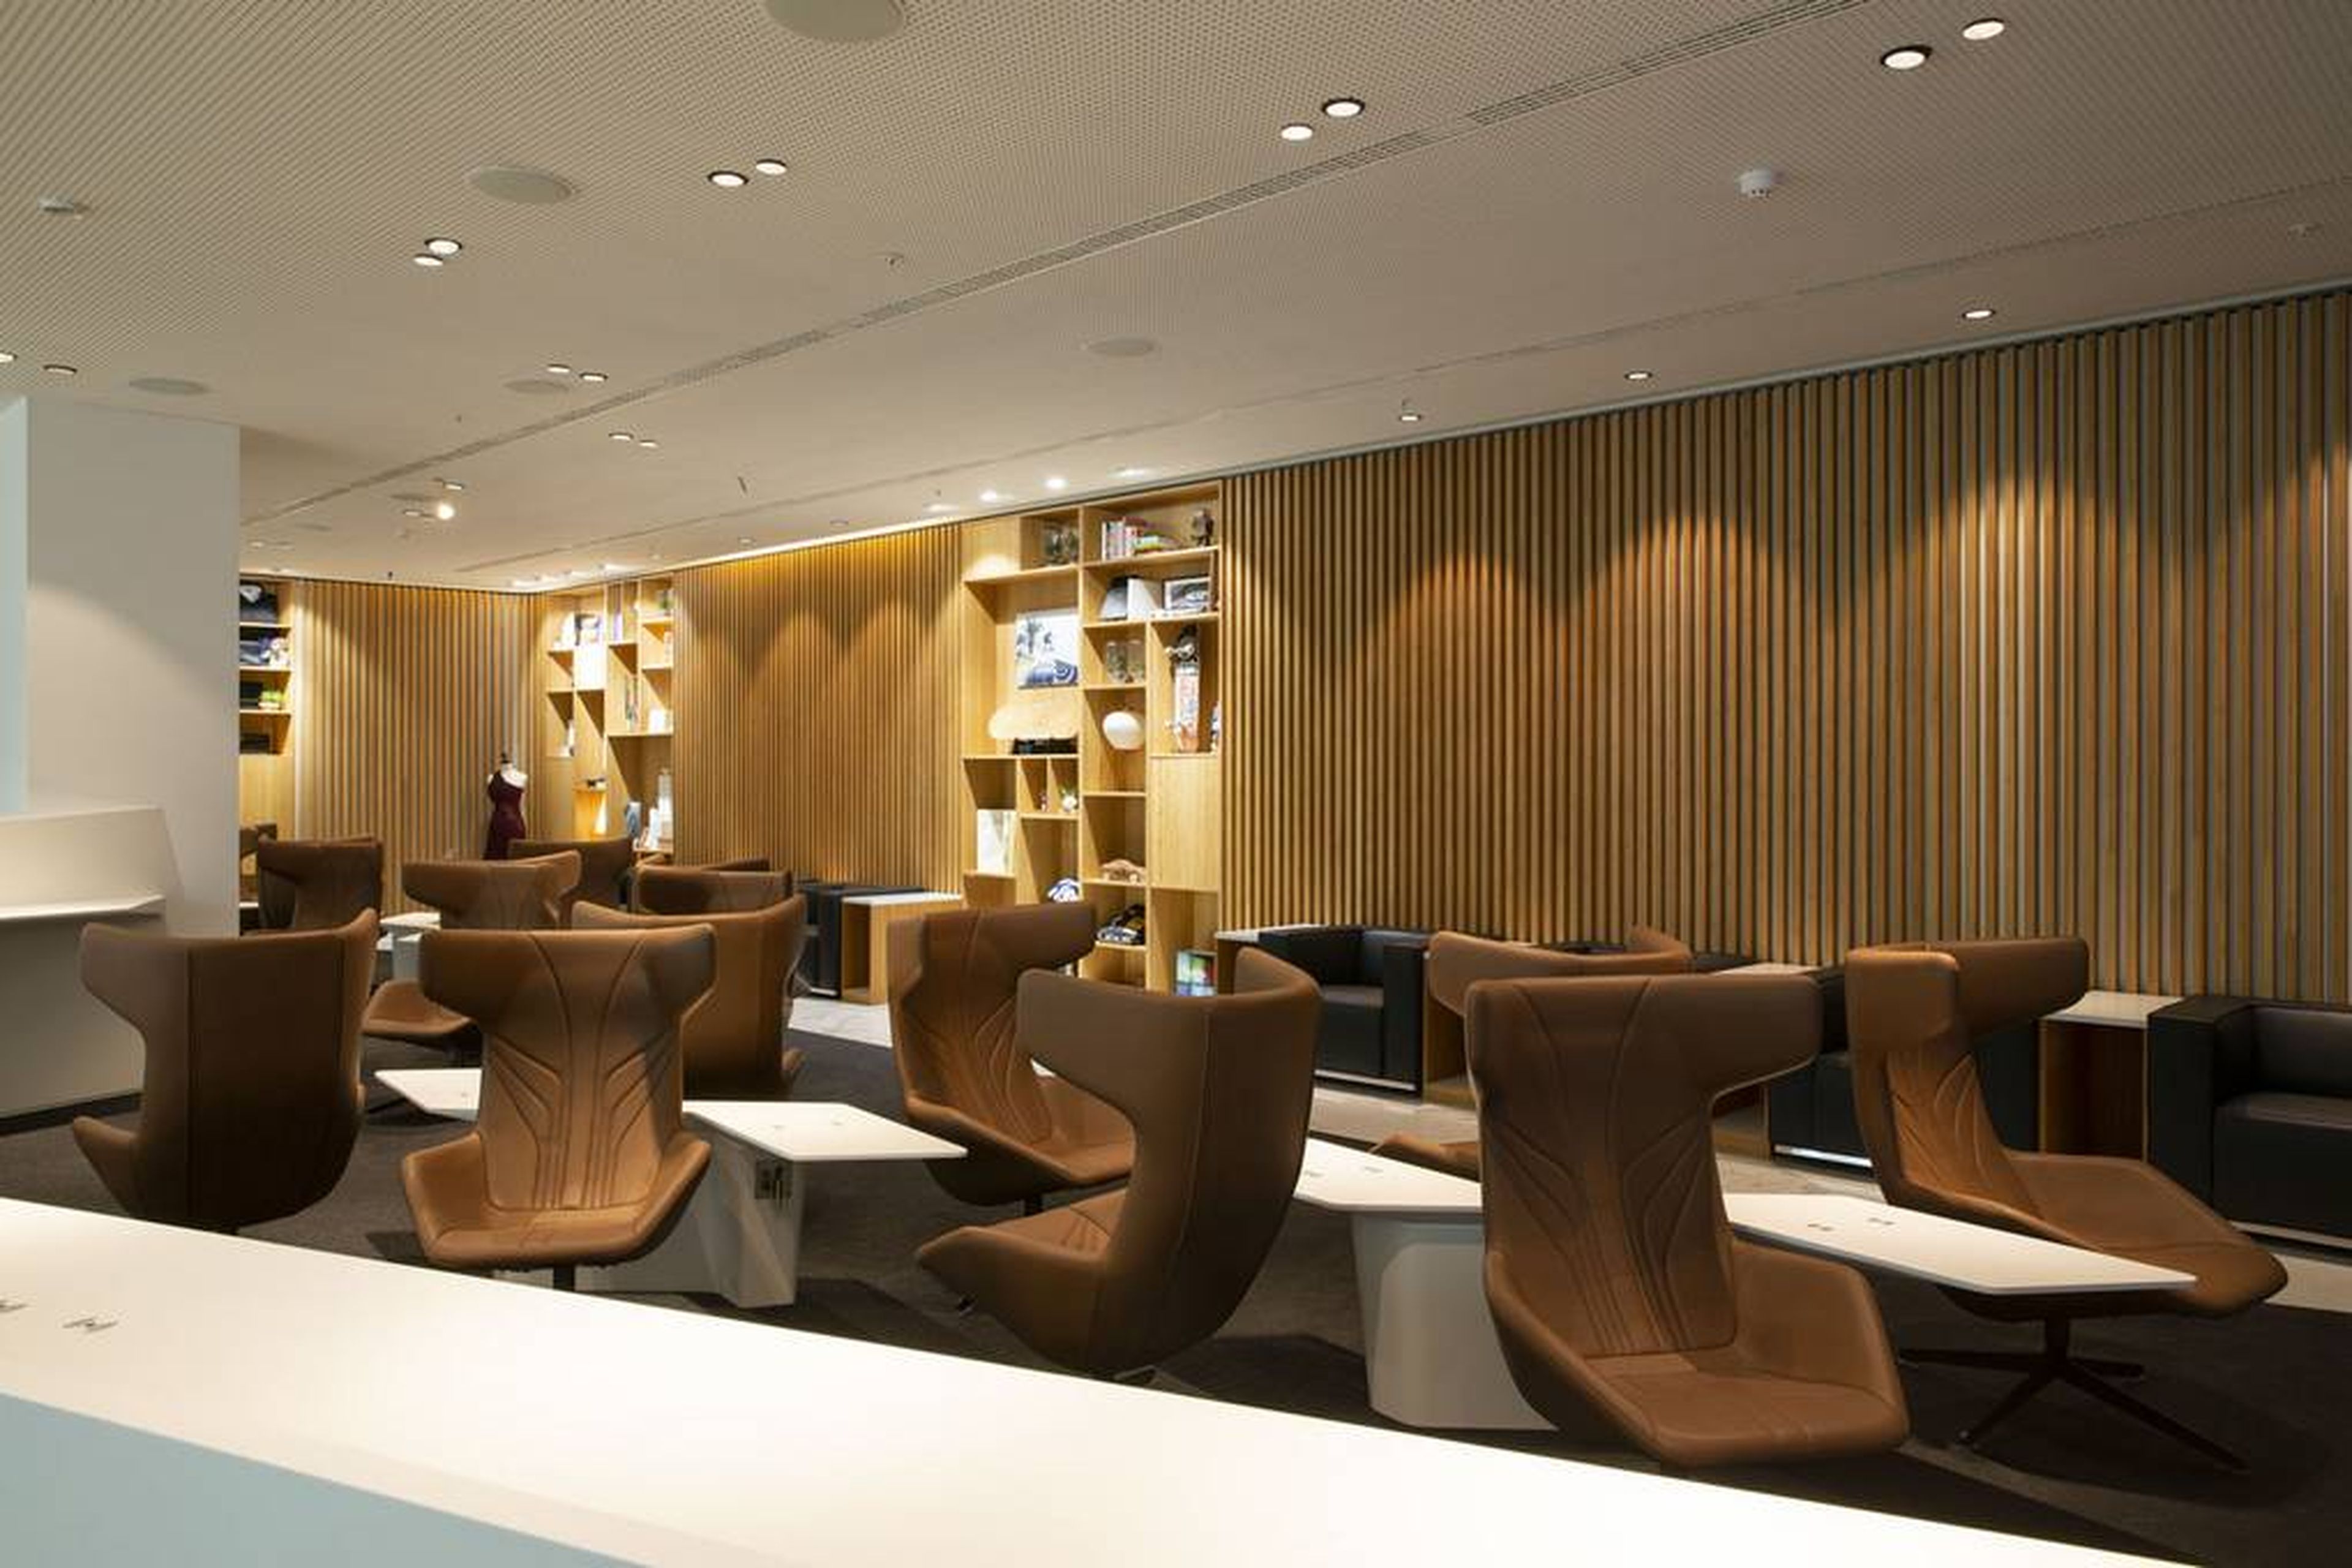 Lounge by Lexus Bruselas